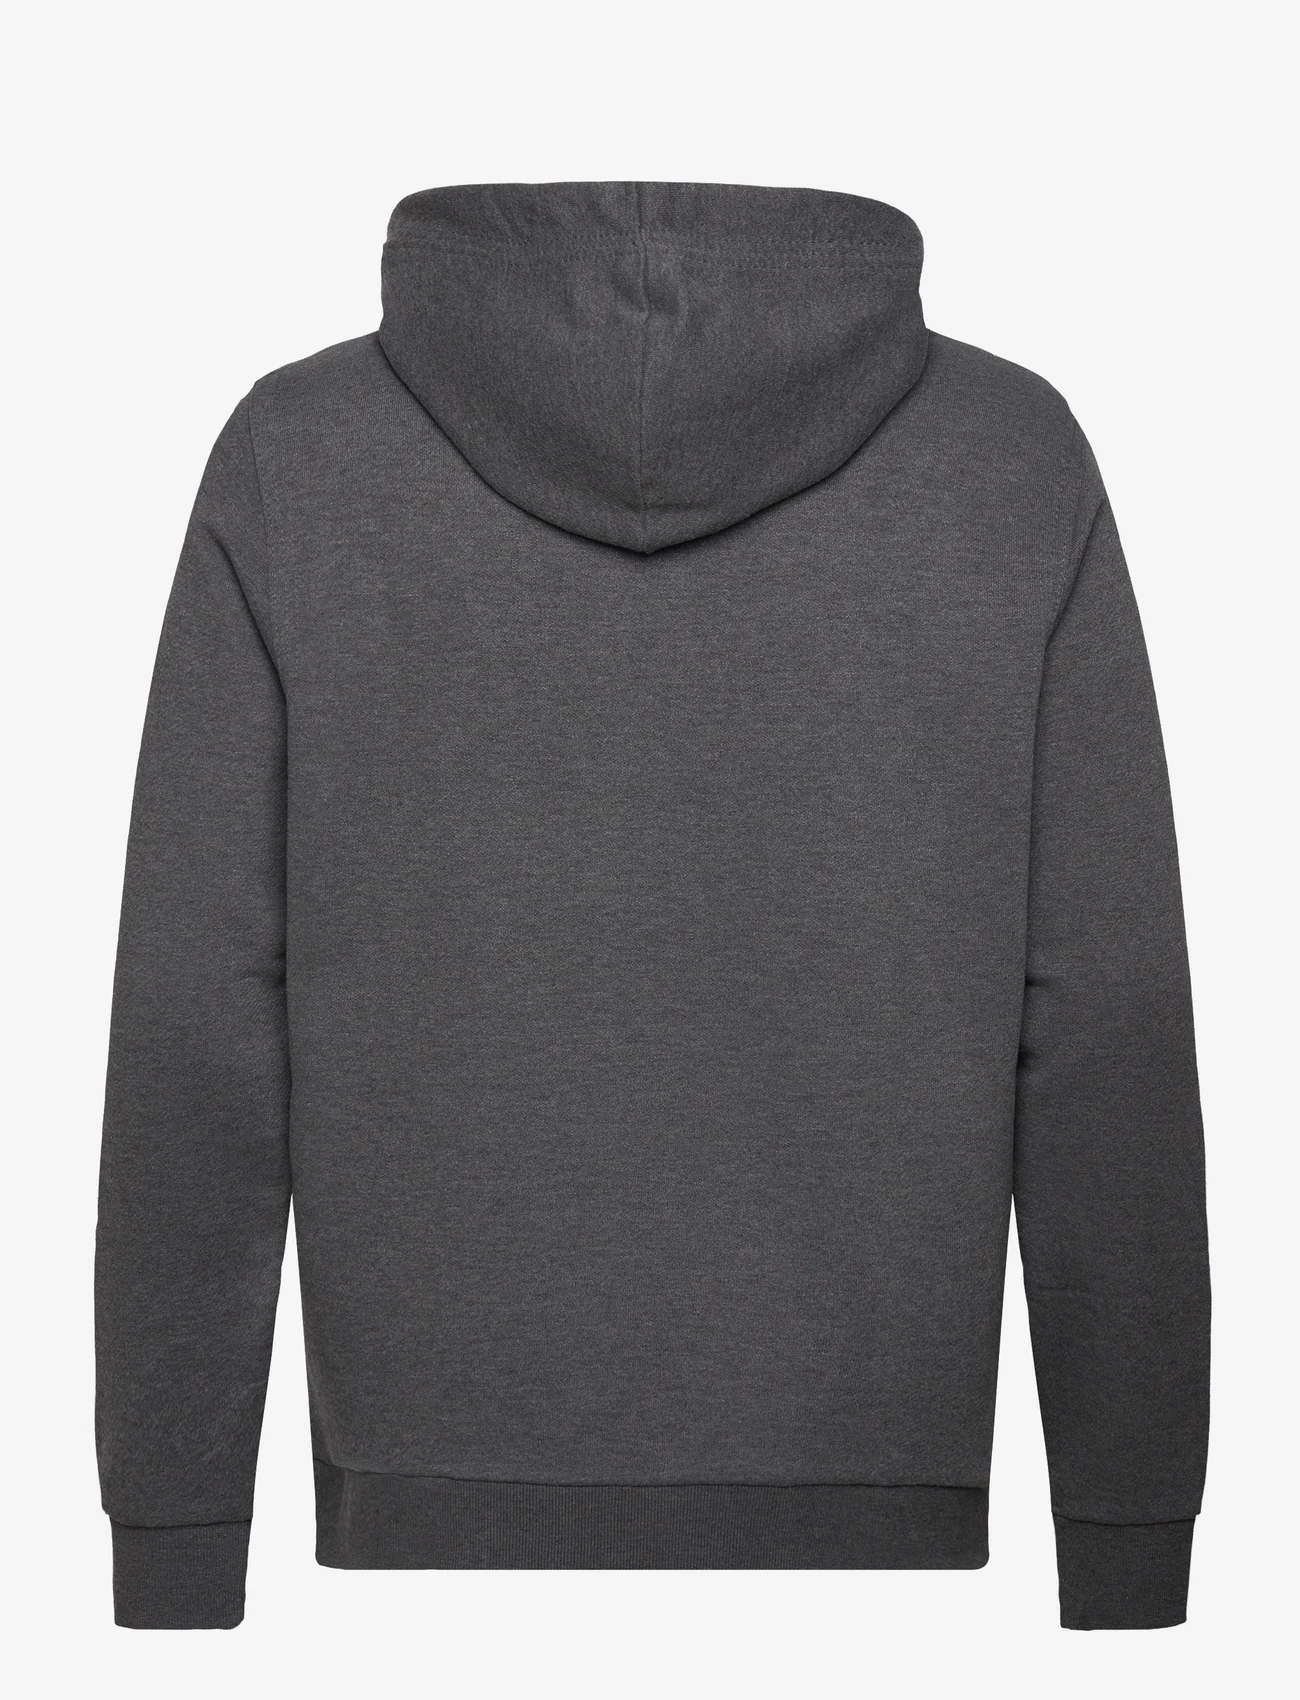 Tom Tailor - logo hoodie - hoodies - dark grey melange - 1